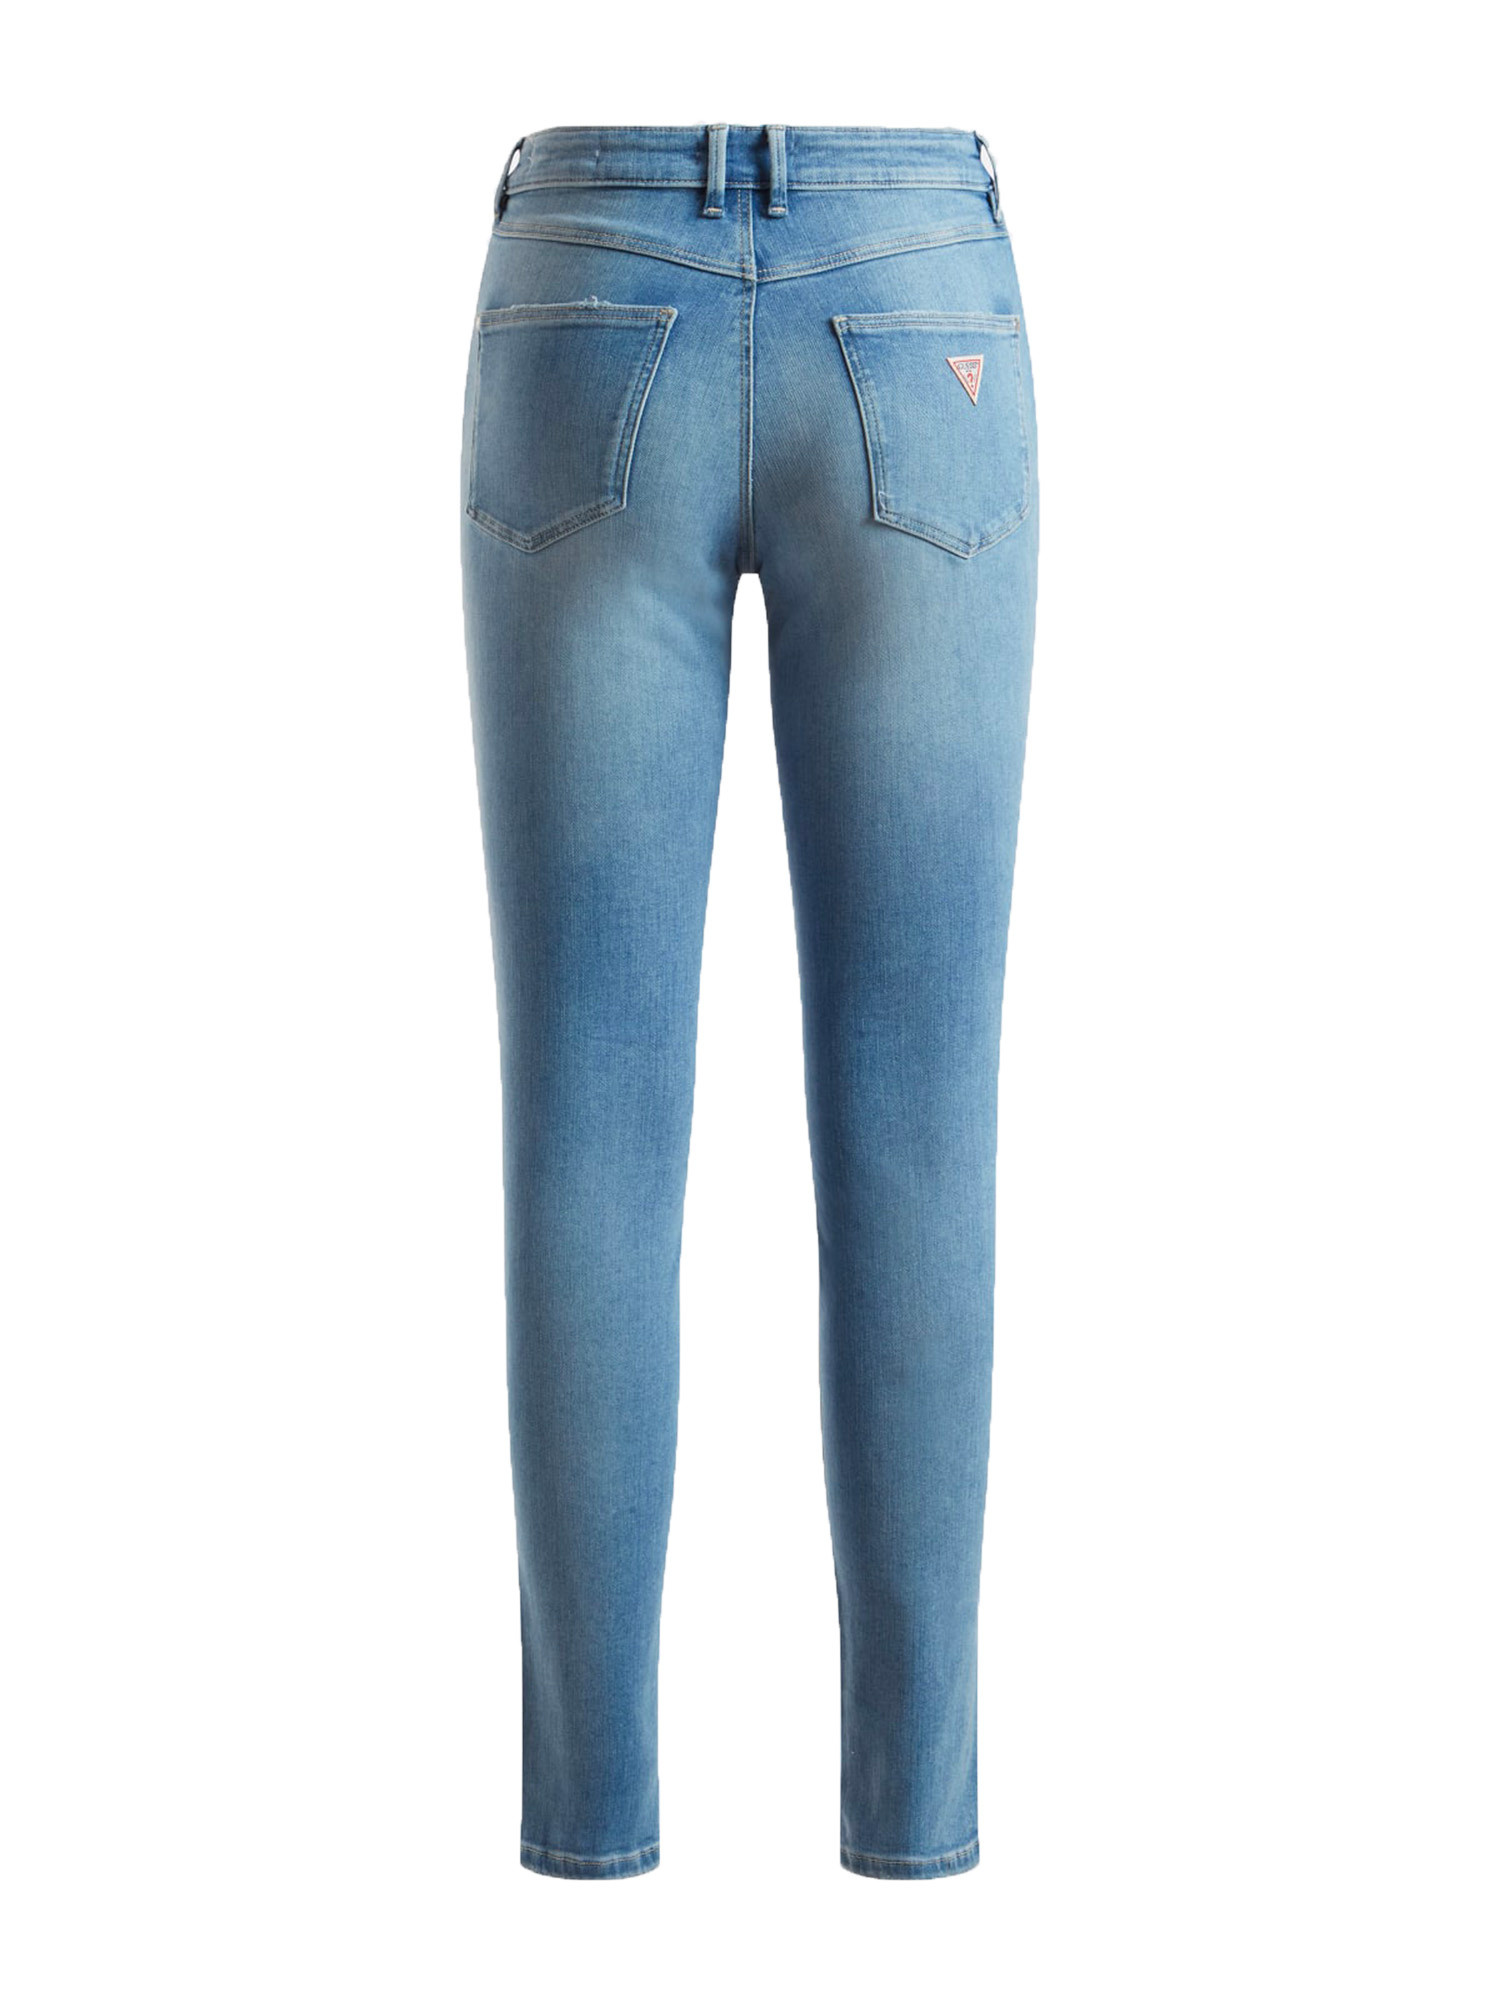 Guess - 5-pocket skinny jeans, Light Blue, large image number 1